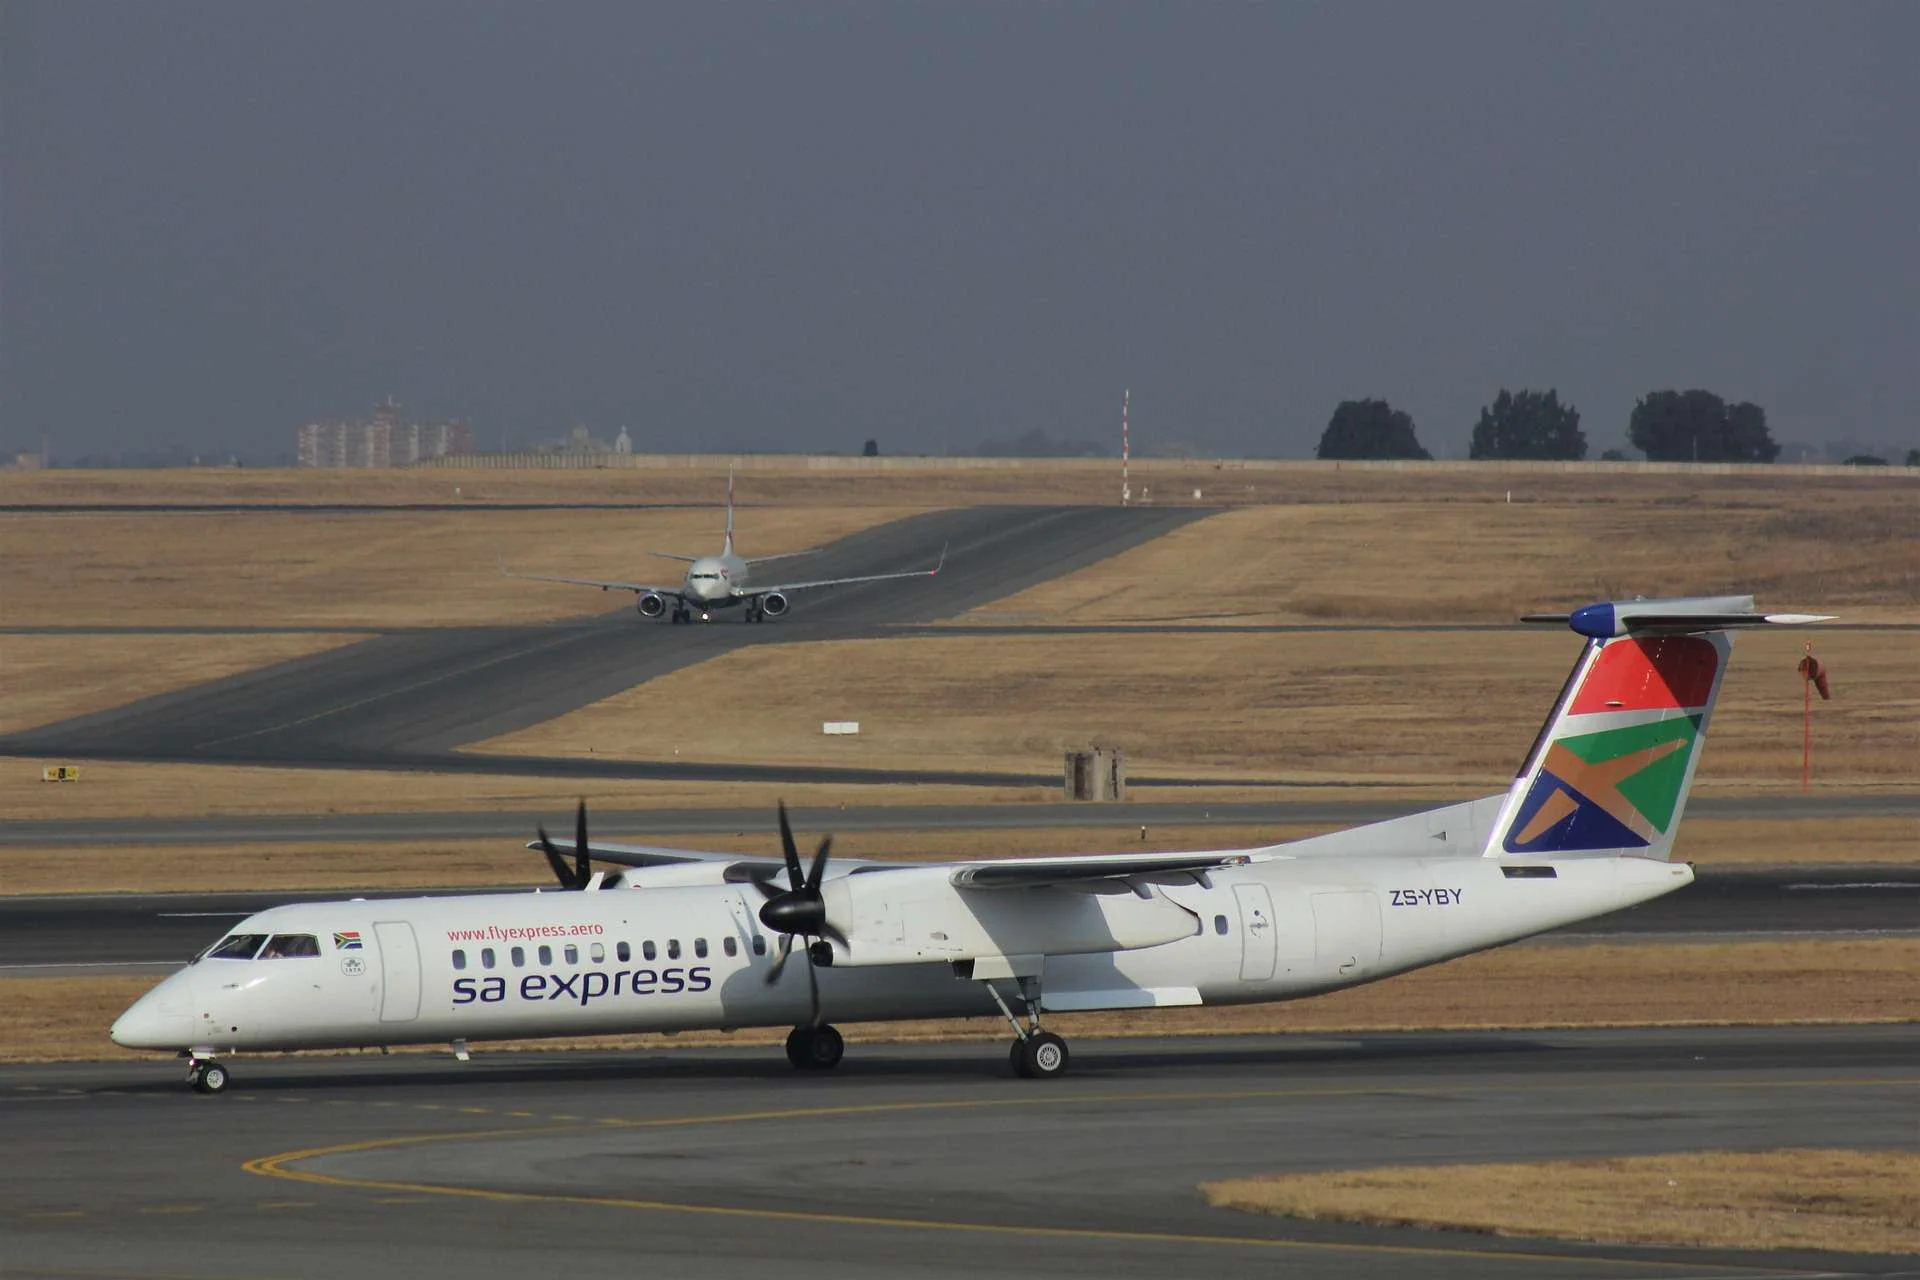 SA Express Plane at airport